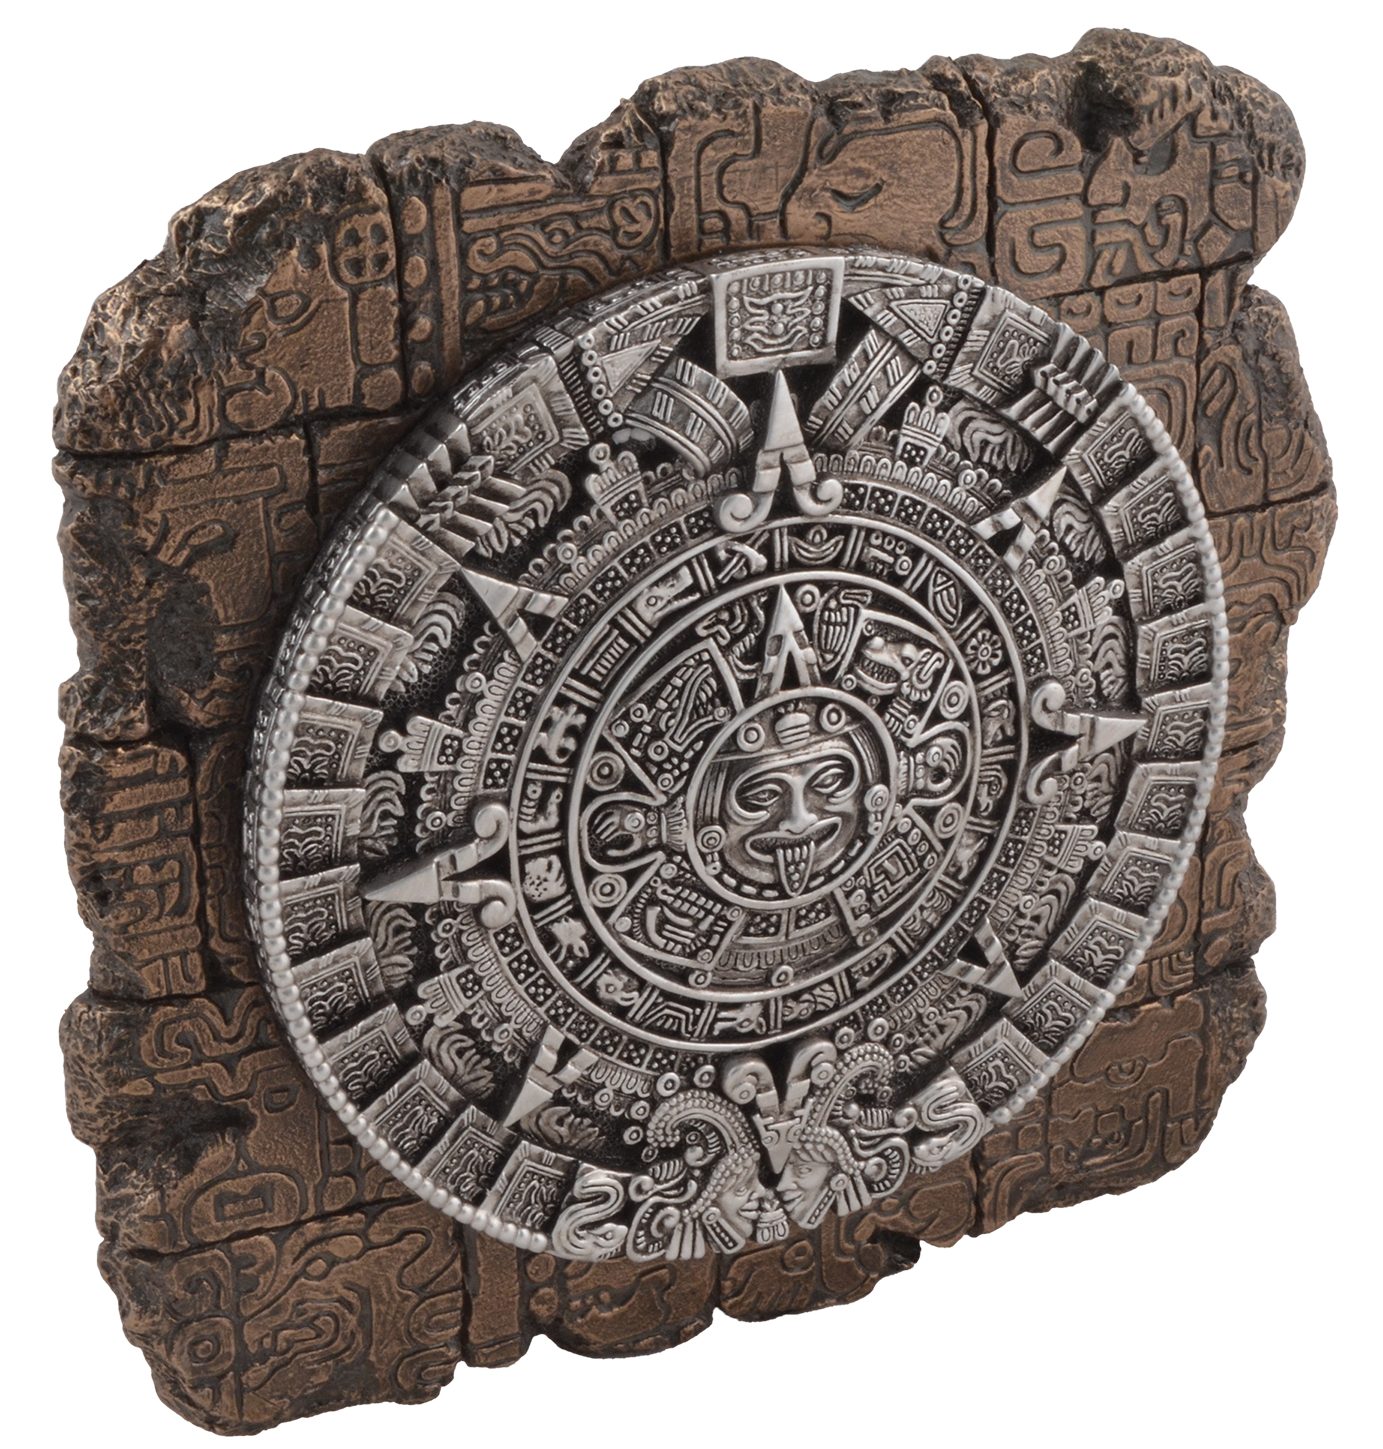 Vogler direct ca. 23x22x4cm bronziert - Veronese, von Wanddekoobjekt Hand Wandrelief Aztekenkalender bronziert, LxBxH by Gmbh